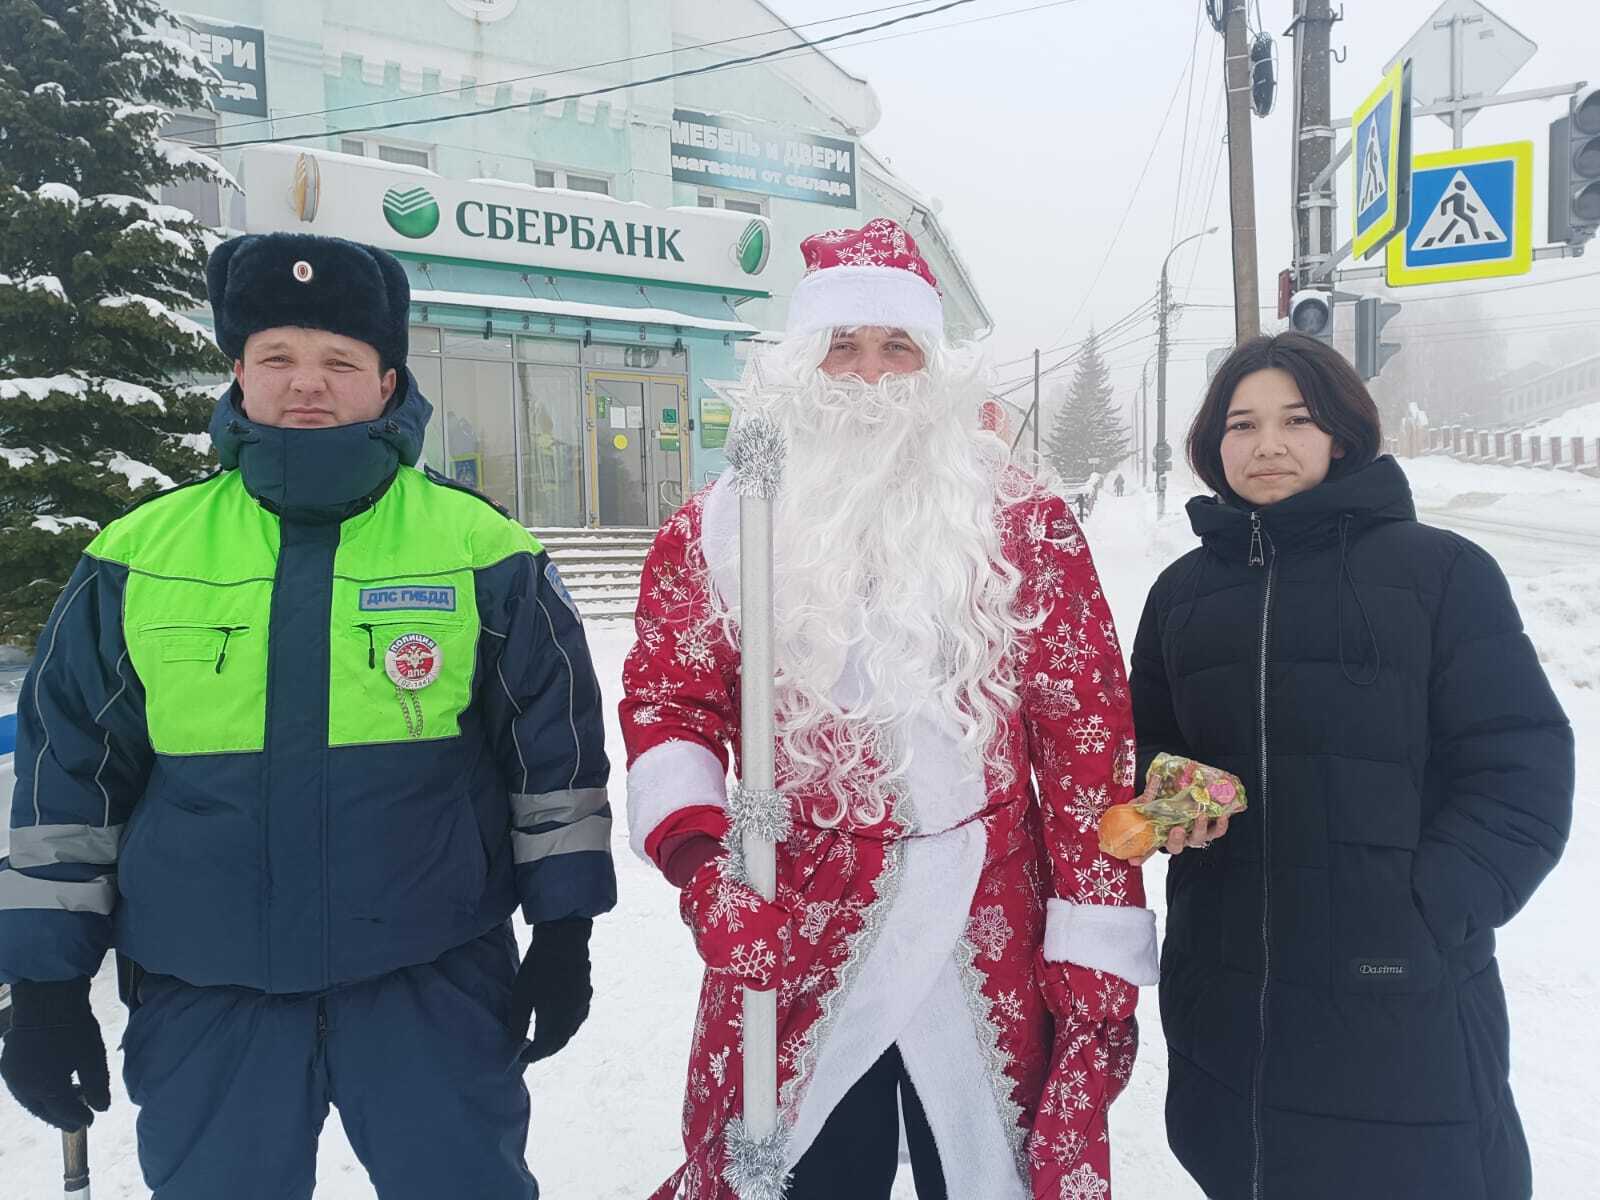 Сотрудники Госавтоинспекции Фёдоровского района поздравили автомобилистов и пешеходов с наступающим праздником